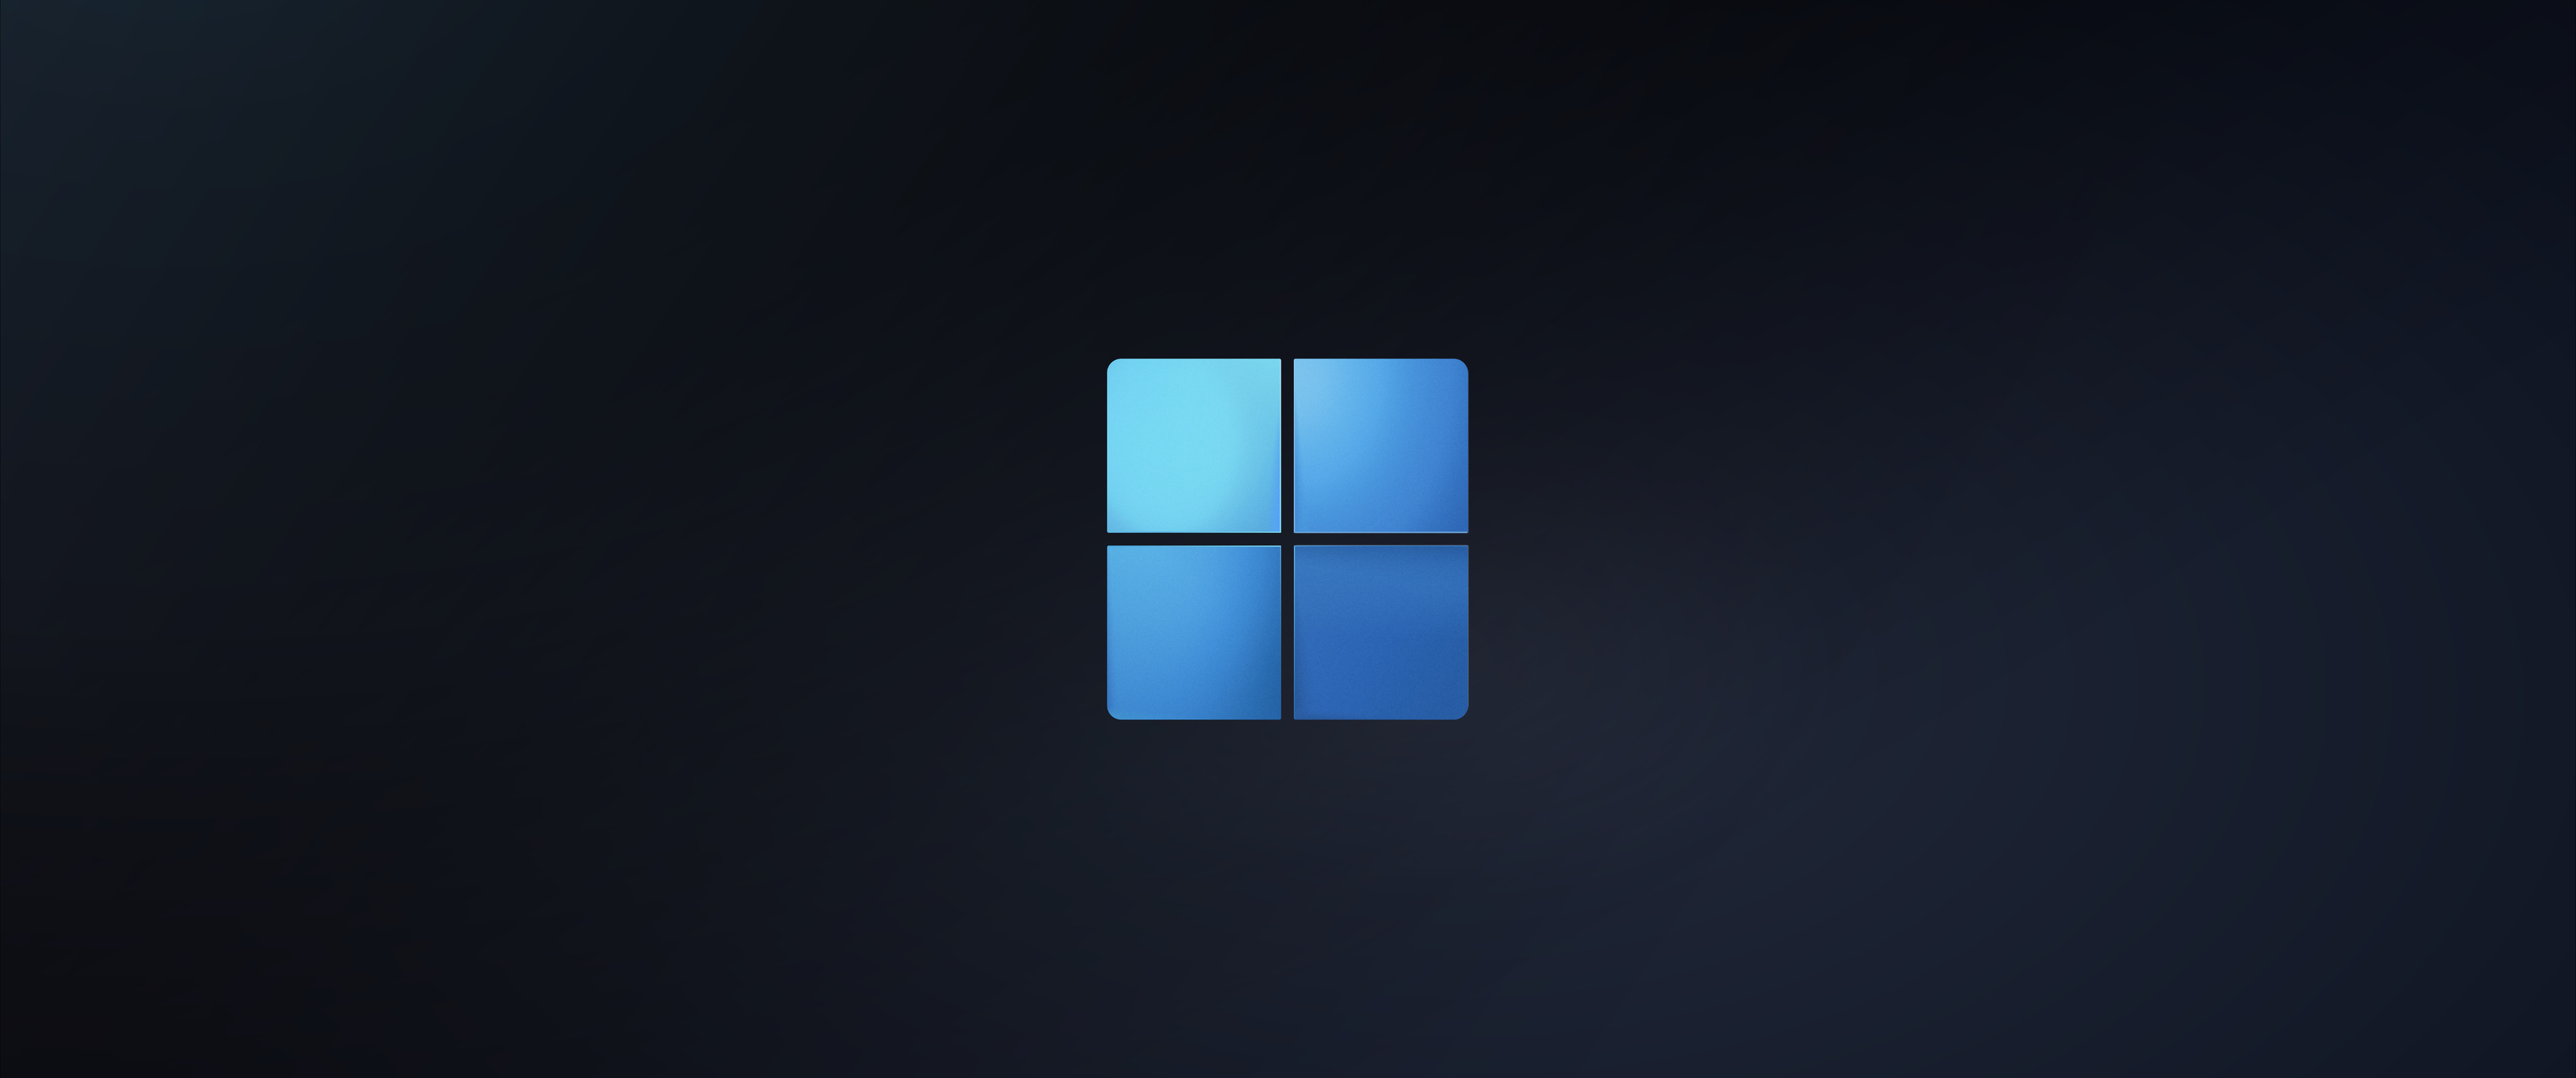 3440x1440 Windows 11 Logo Minimal 15k UltraWide Quad HD 1440P ,HD 4k ...